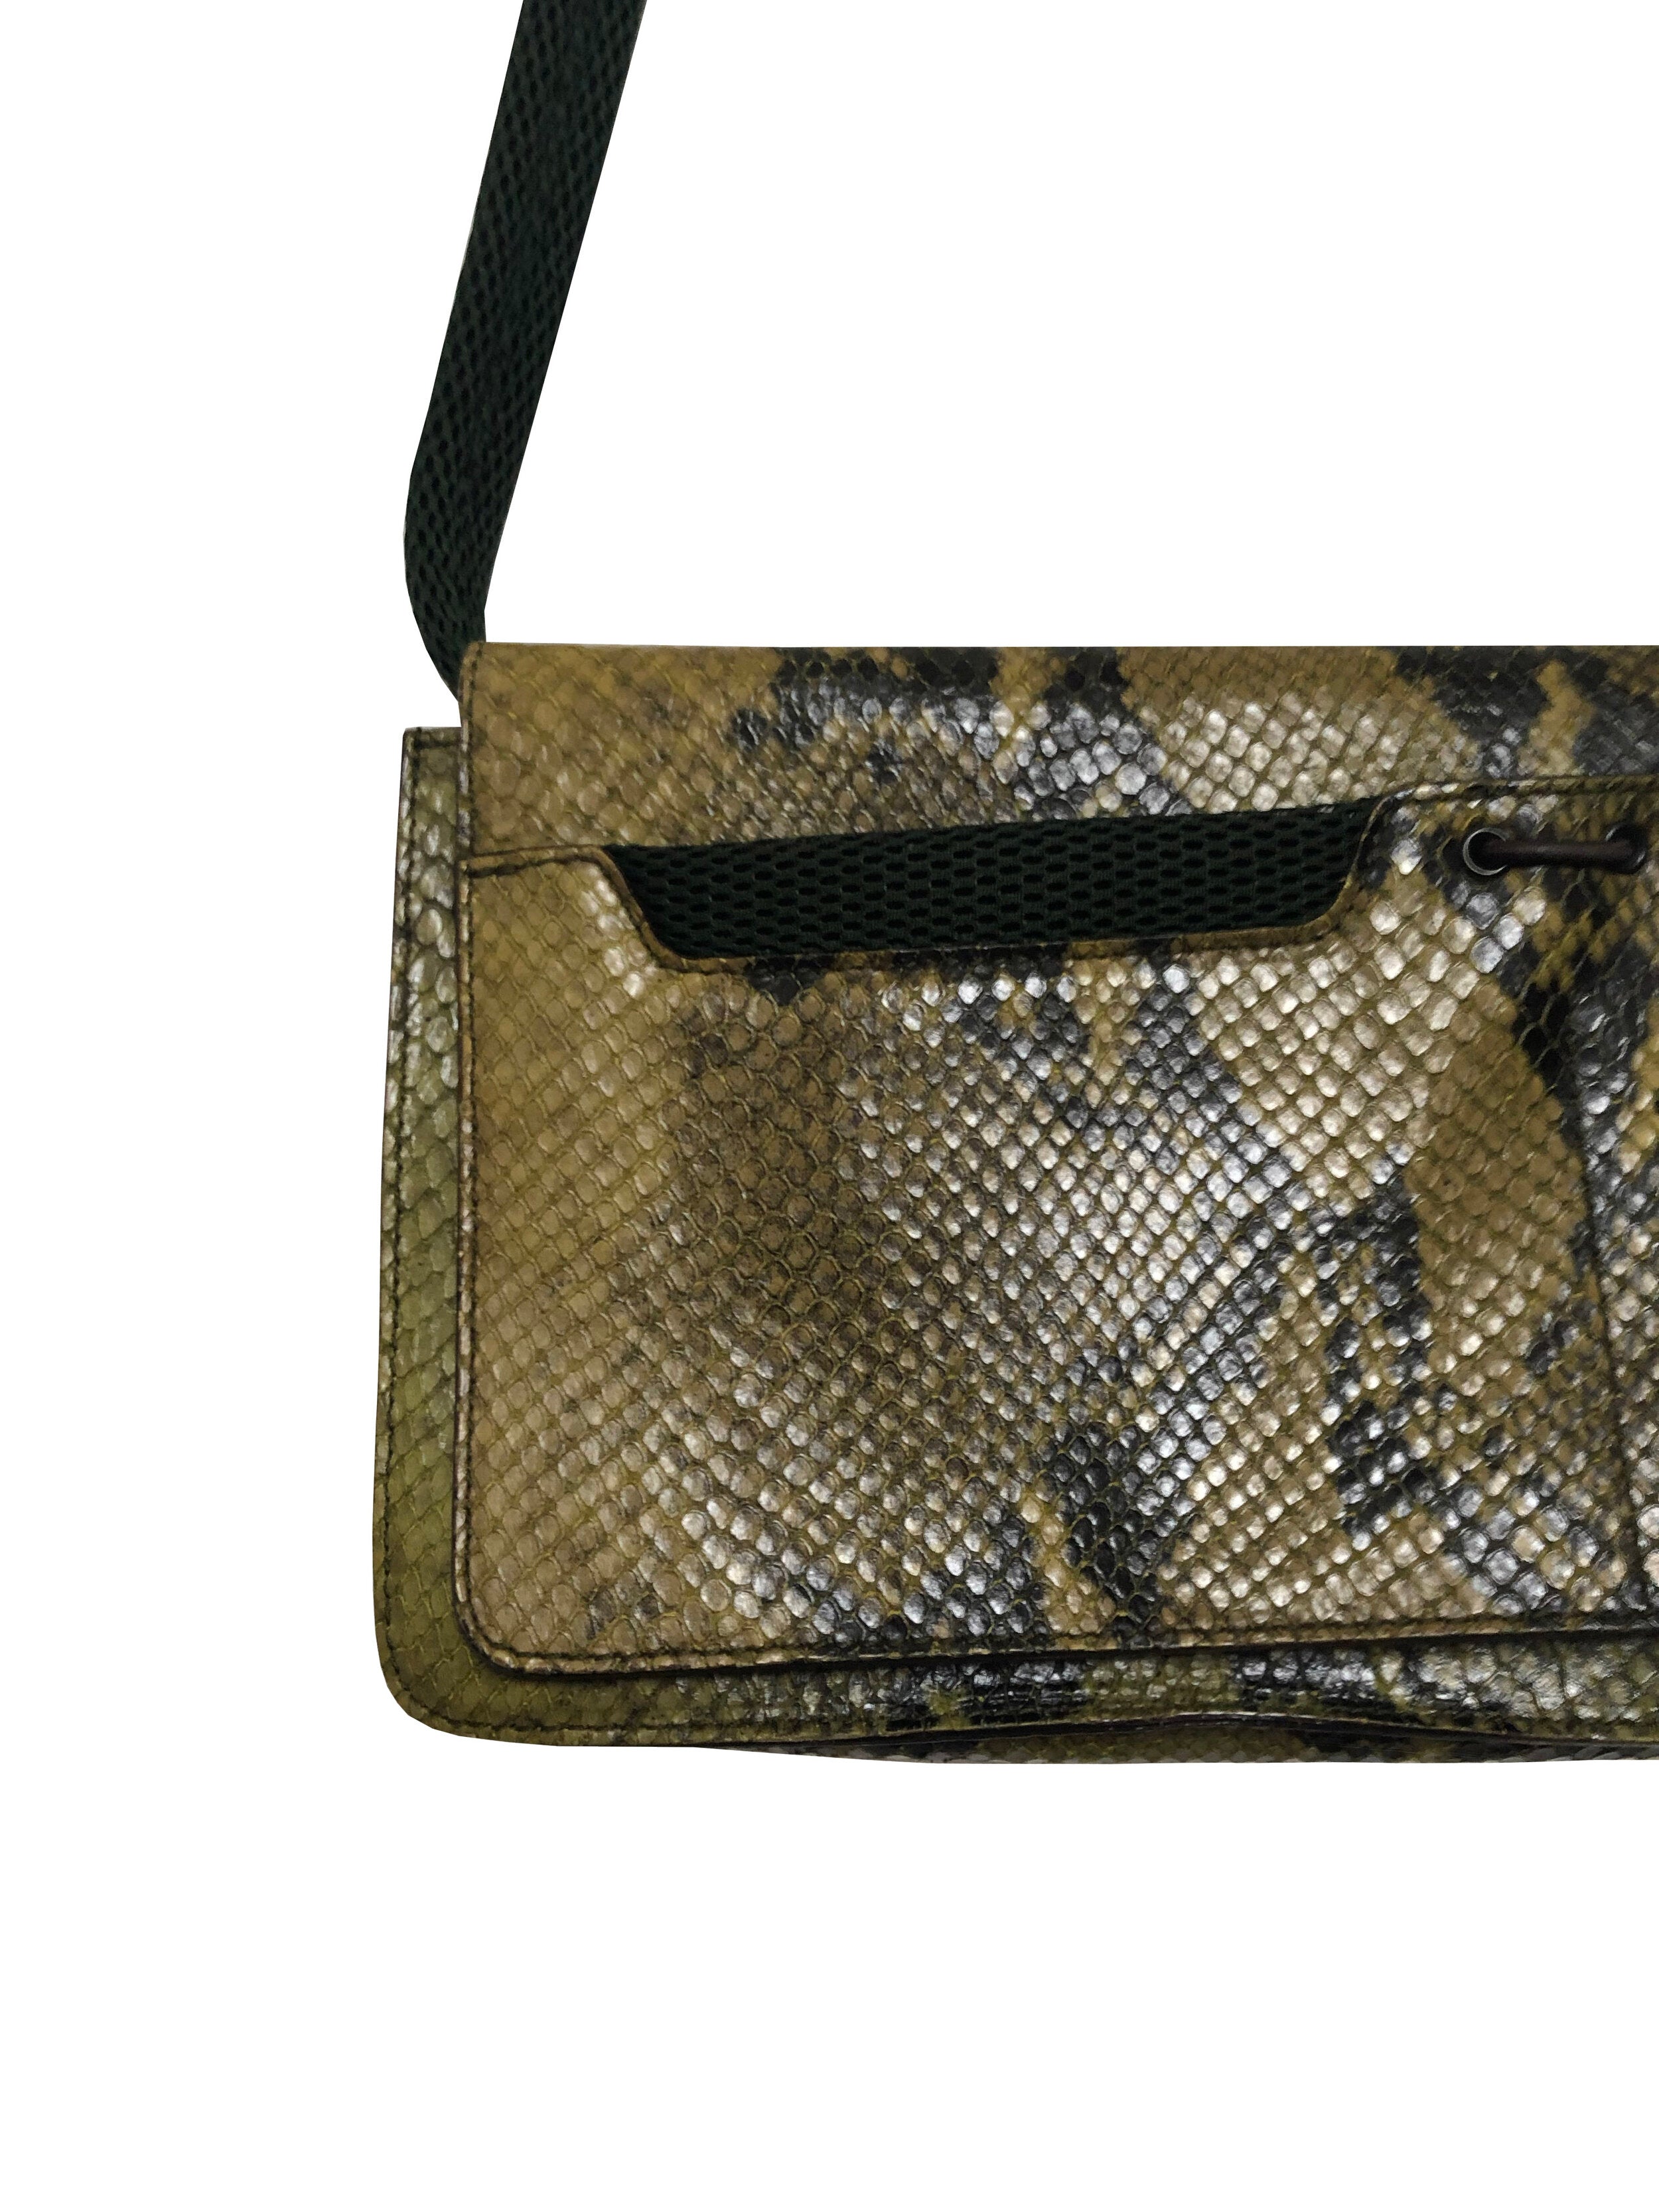 Python handbag Miu Miu Green in Python - 17660305